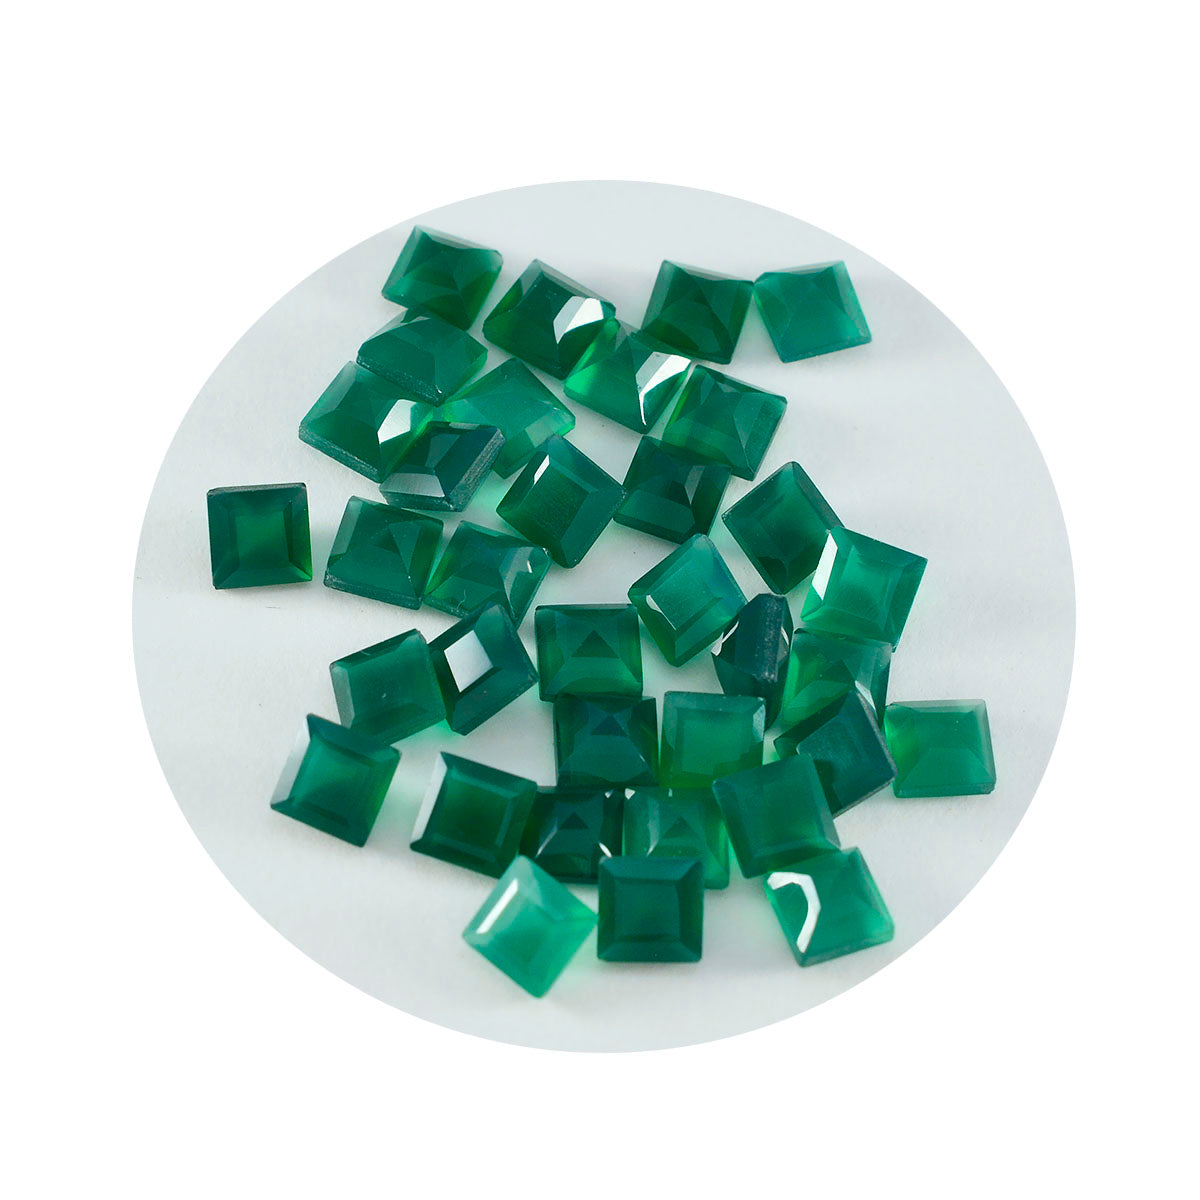 Riyogems 1 Stück echter grüner Onyx, facettiert, 5 x 5 mm, quadratische Form, gut aussehender, hochwertiger loser Edelstein